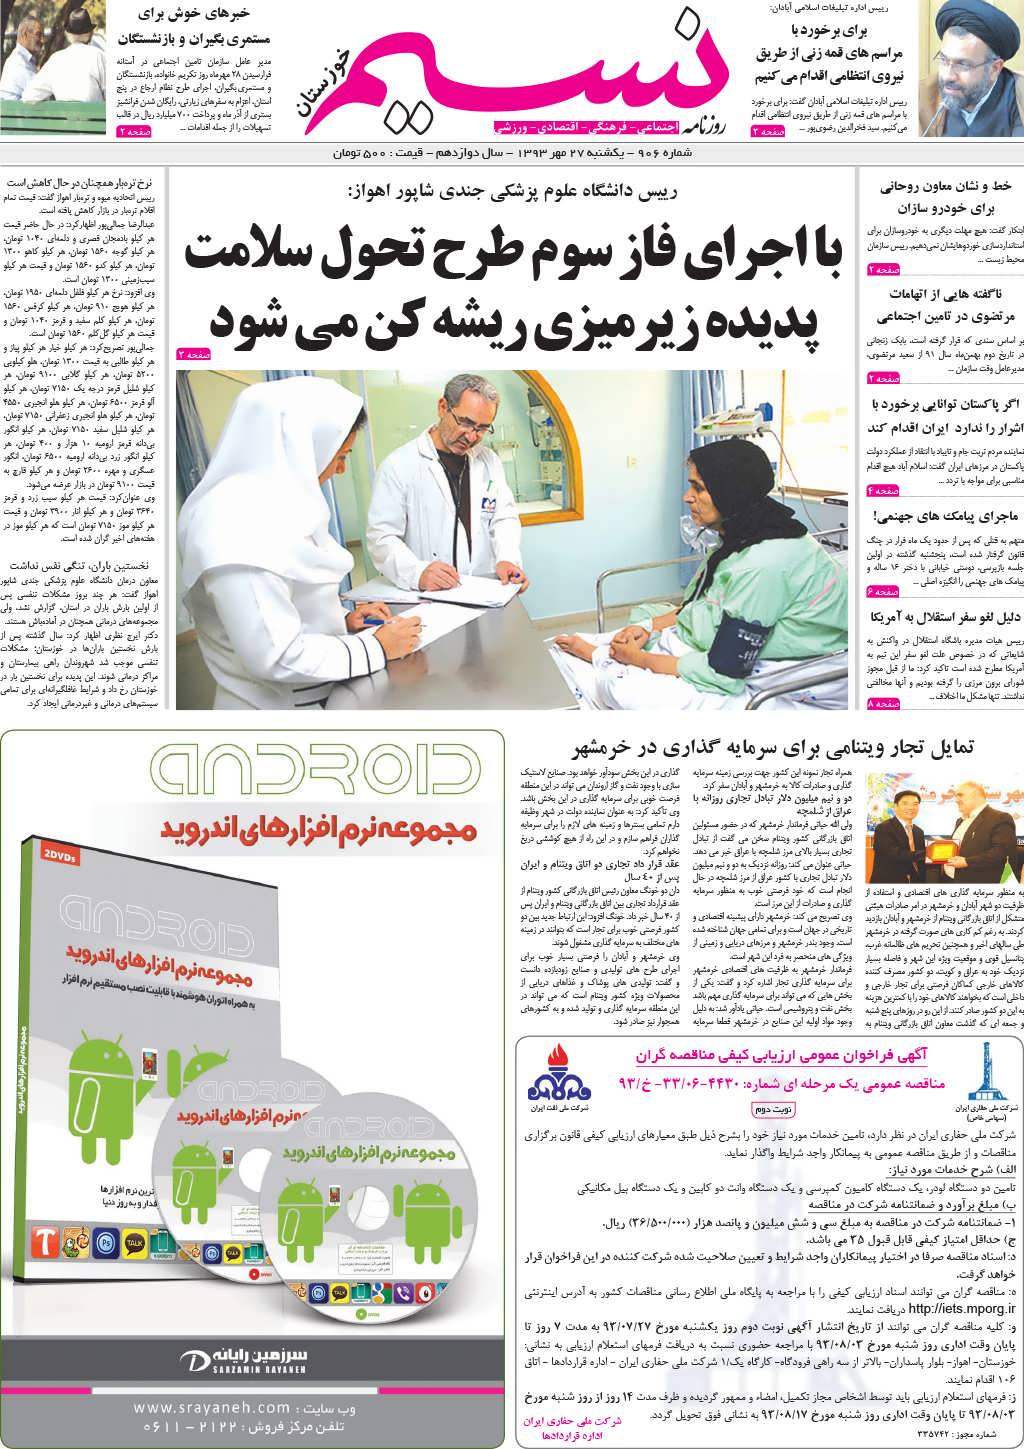 صفحه اصلی روزنامه نسیم خوزستان شماره ۹۰۶